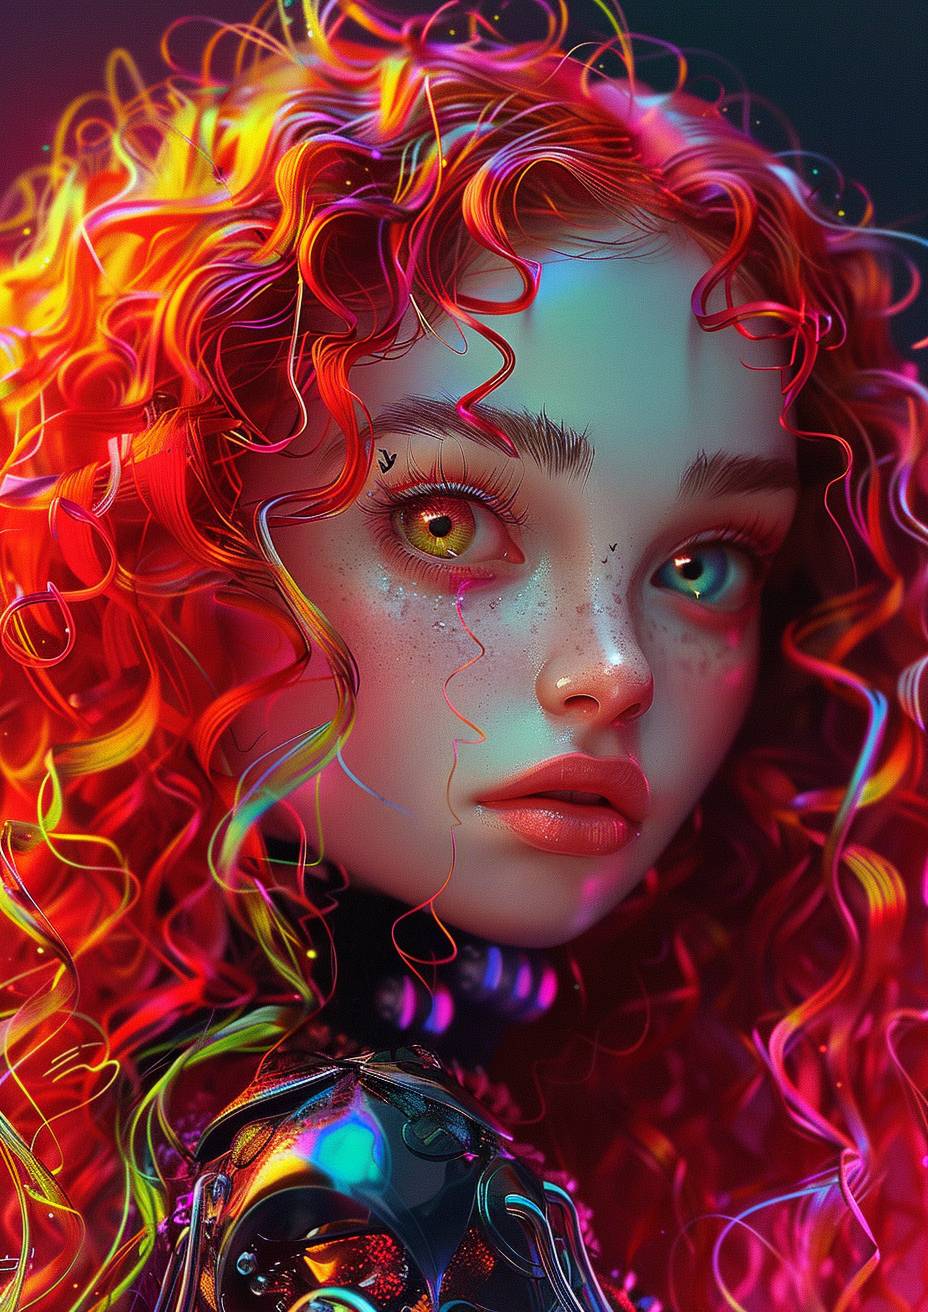 メタルボディースーツを着た幻想的な赤毛の巻き毛の女の子、彼女は大きな目と長いまつ毛を持っている、詳細なアニメスタイル、全身ショット、ハイパーリアルなデジタルペインティング、鮮やかな色彩、トレンドカラーパレット